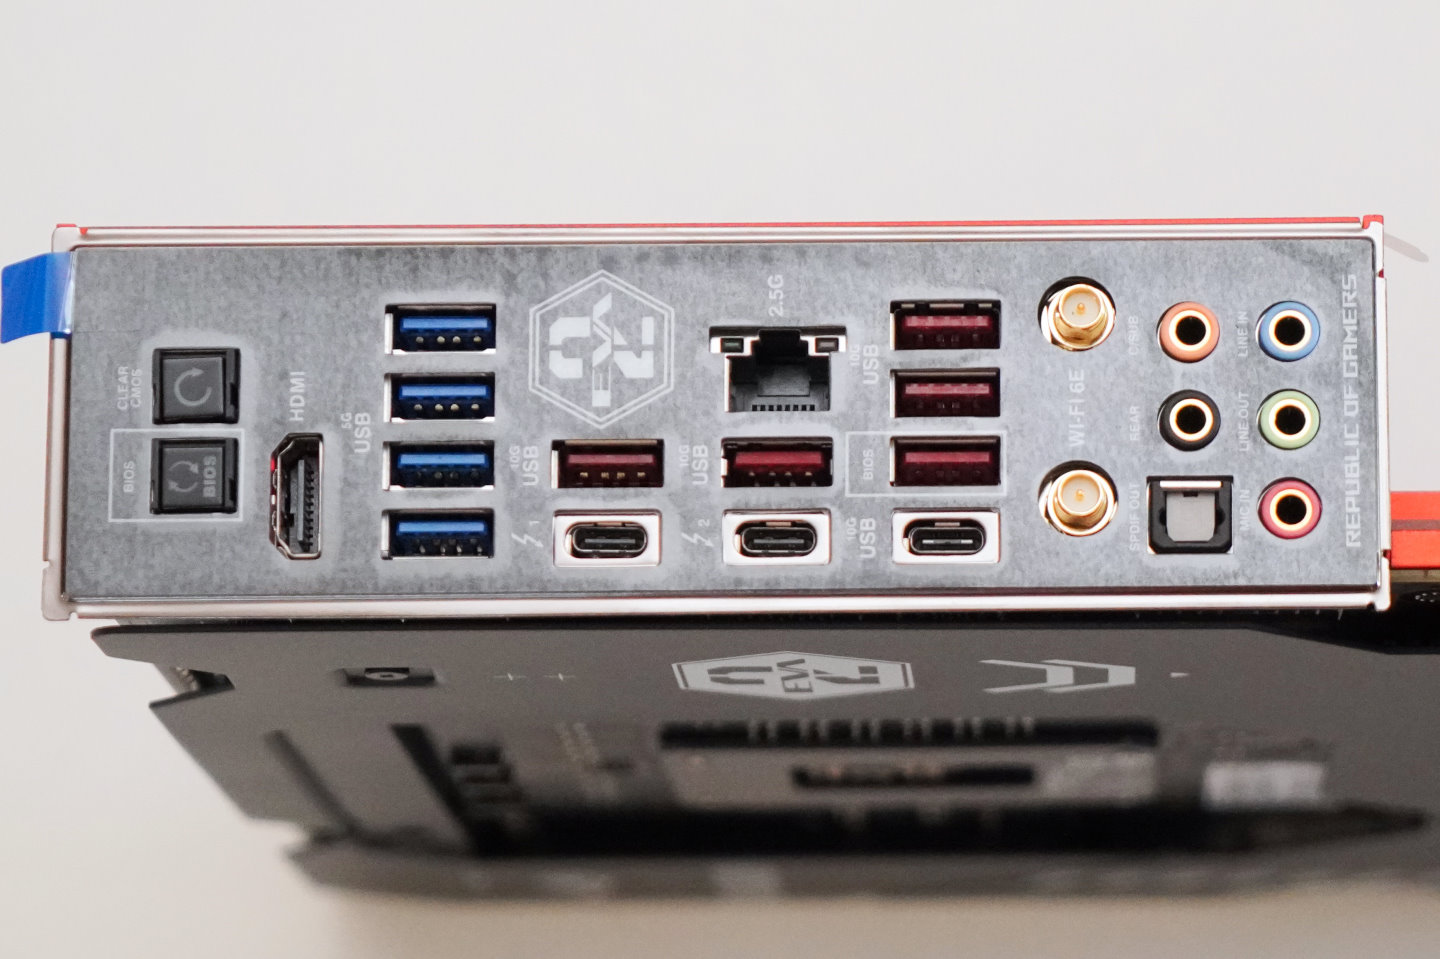 主機板I/O背板總共提供4組USB 3.2 Gen 1 Type-A端、5組USB 3.2 Gen 2 Type-A端、1組USB 3.2 Gen 2 Type-C端，以及2組Thunderbolt 4端。